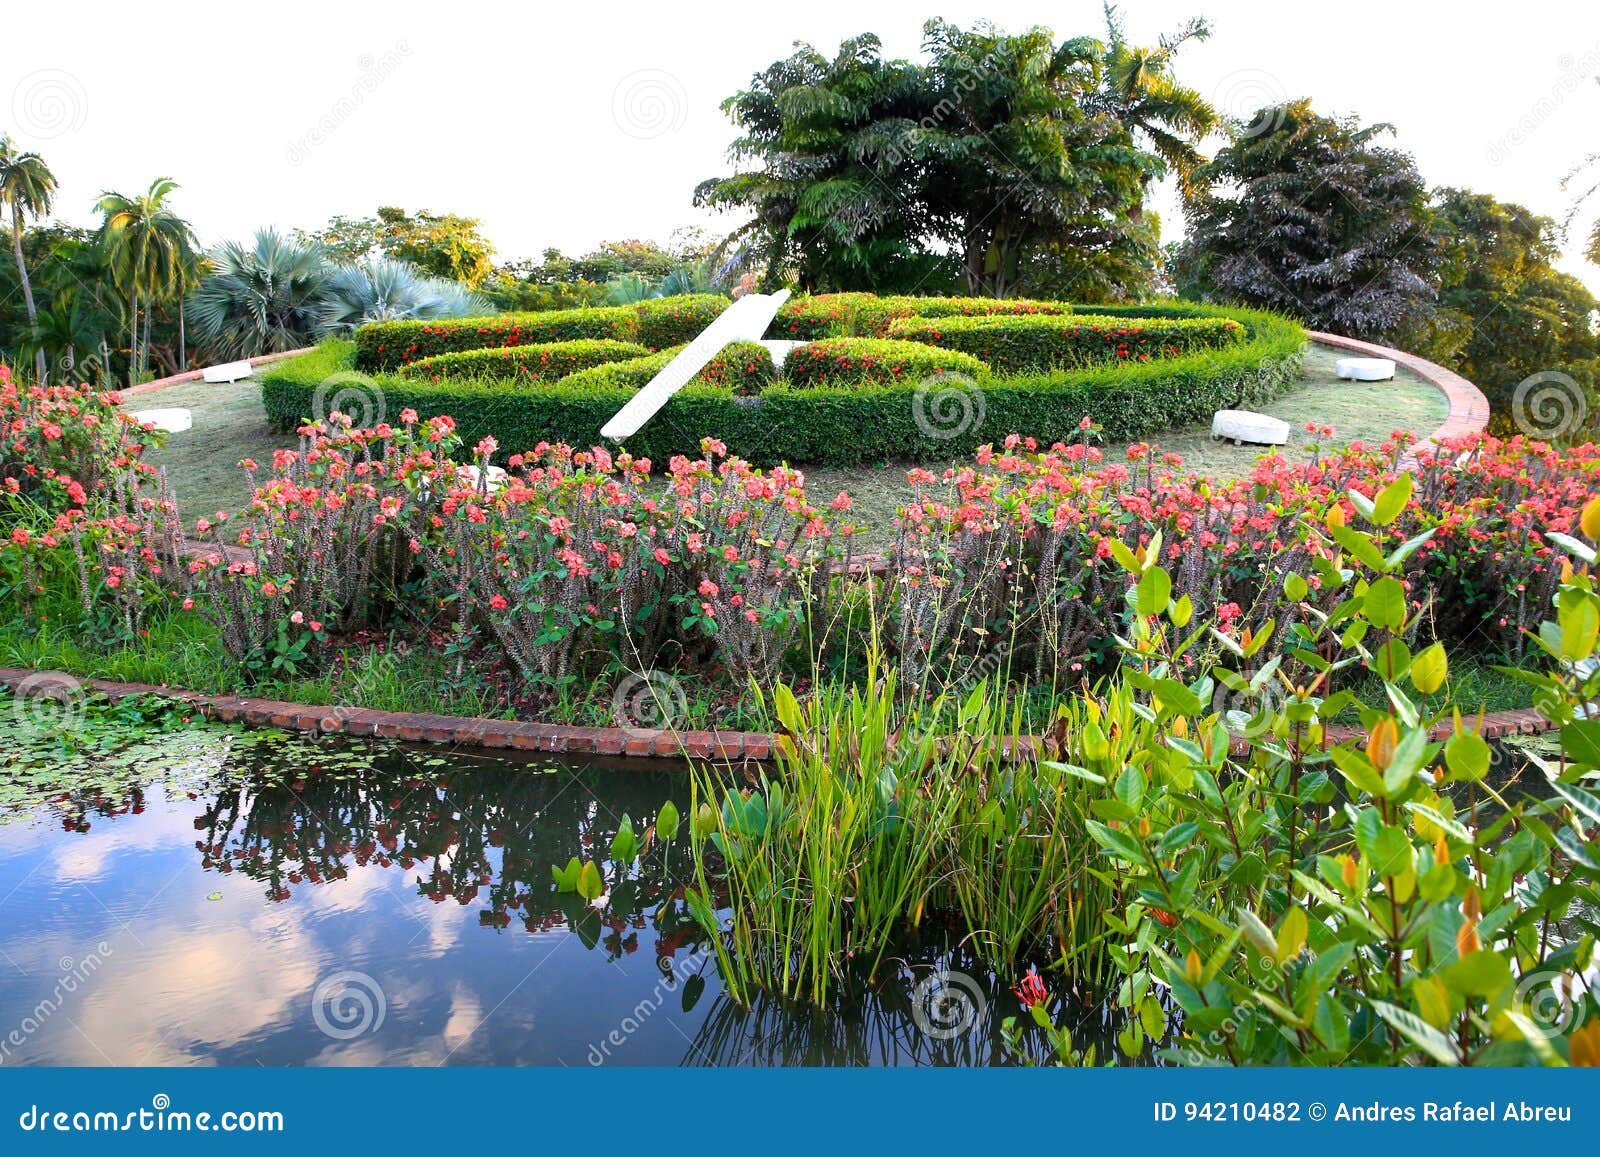 botanical garden, dominican republic